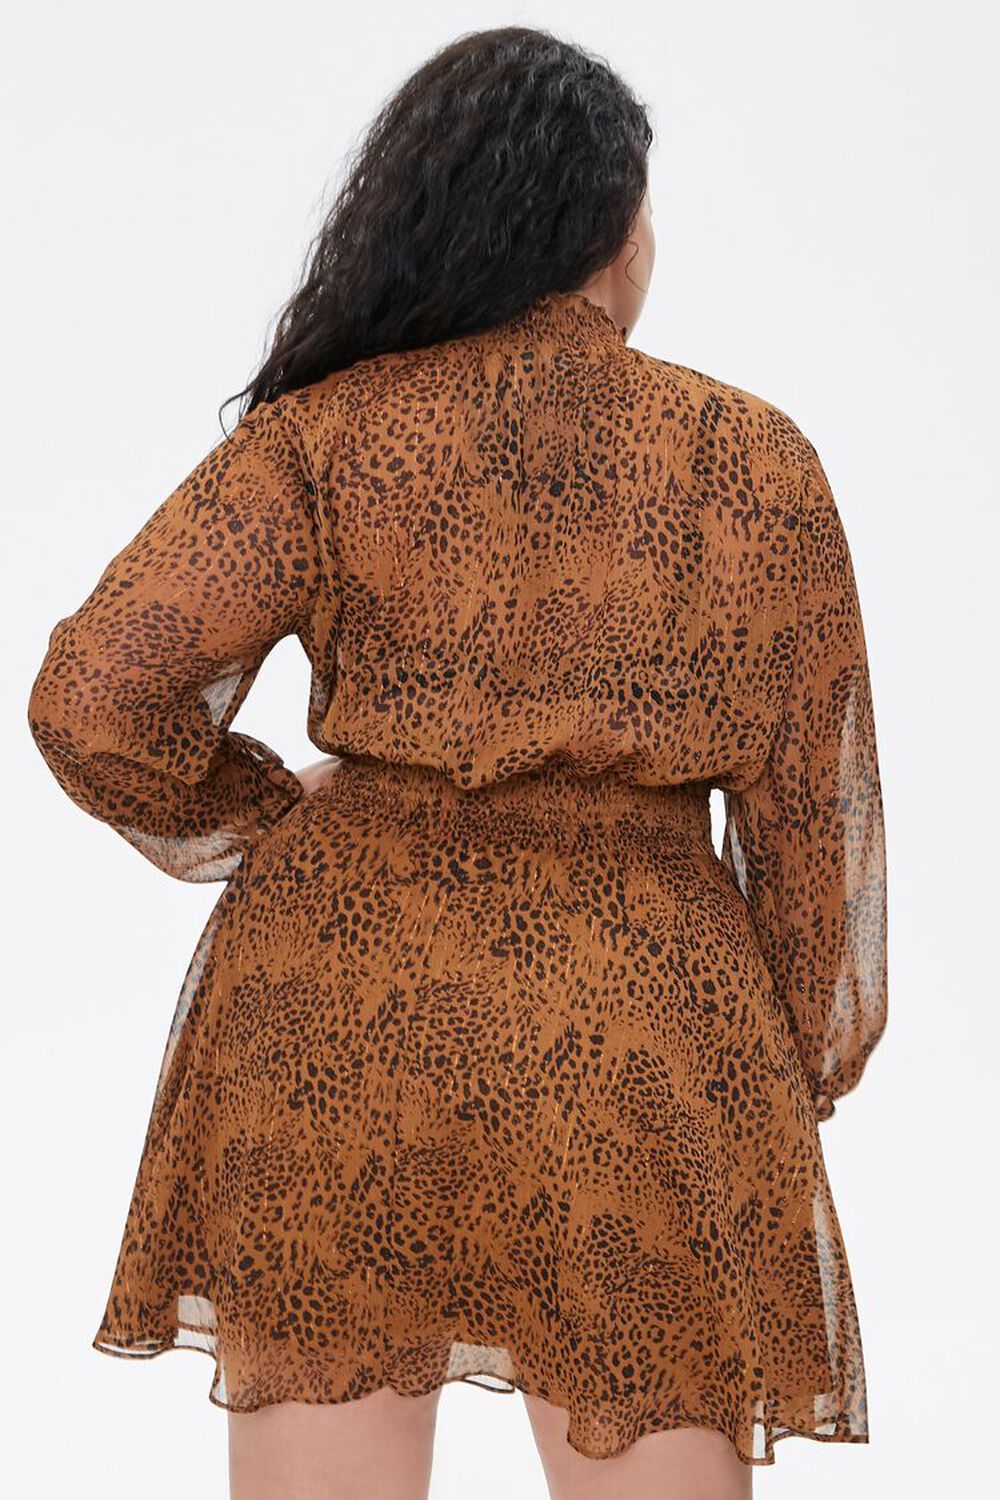 BROWN/BLACK Plus Size Leopard Print Chiffon Dress, image 3